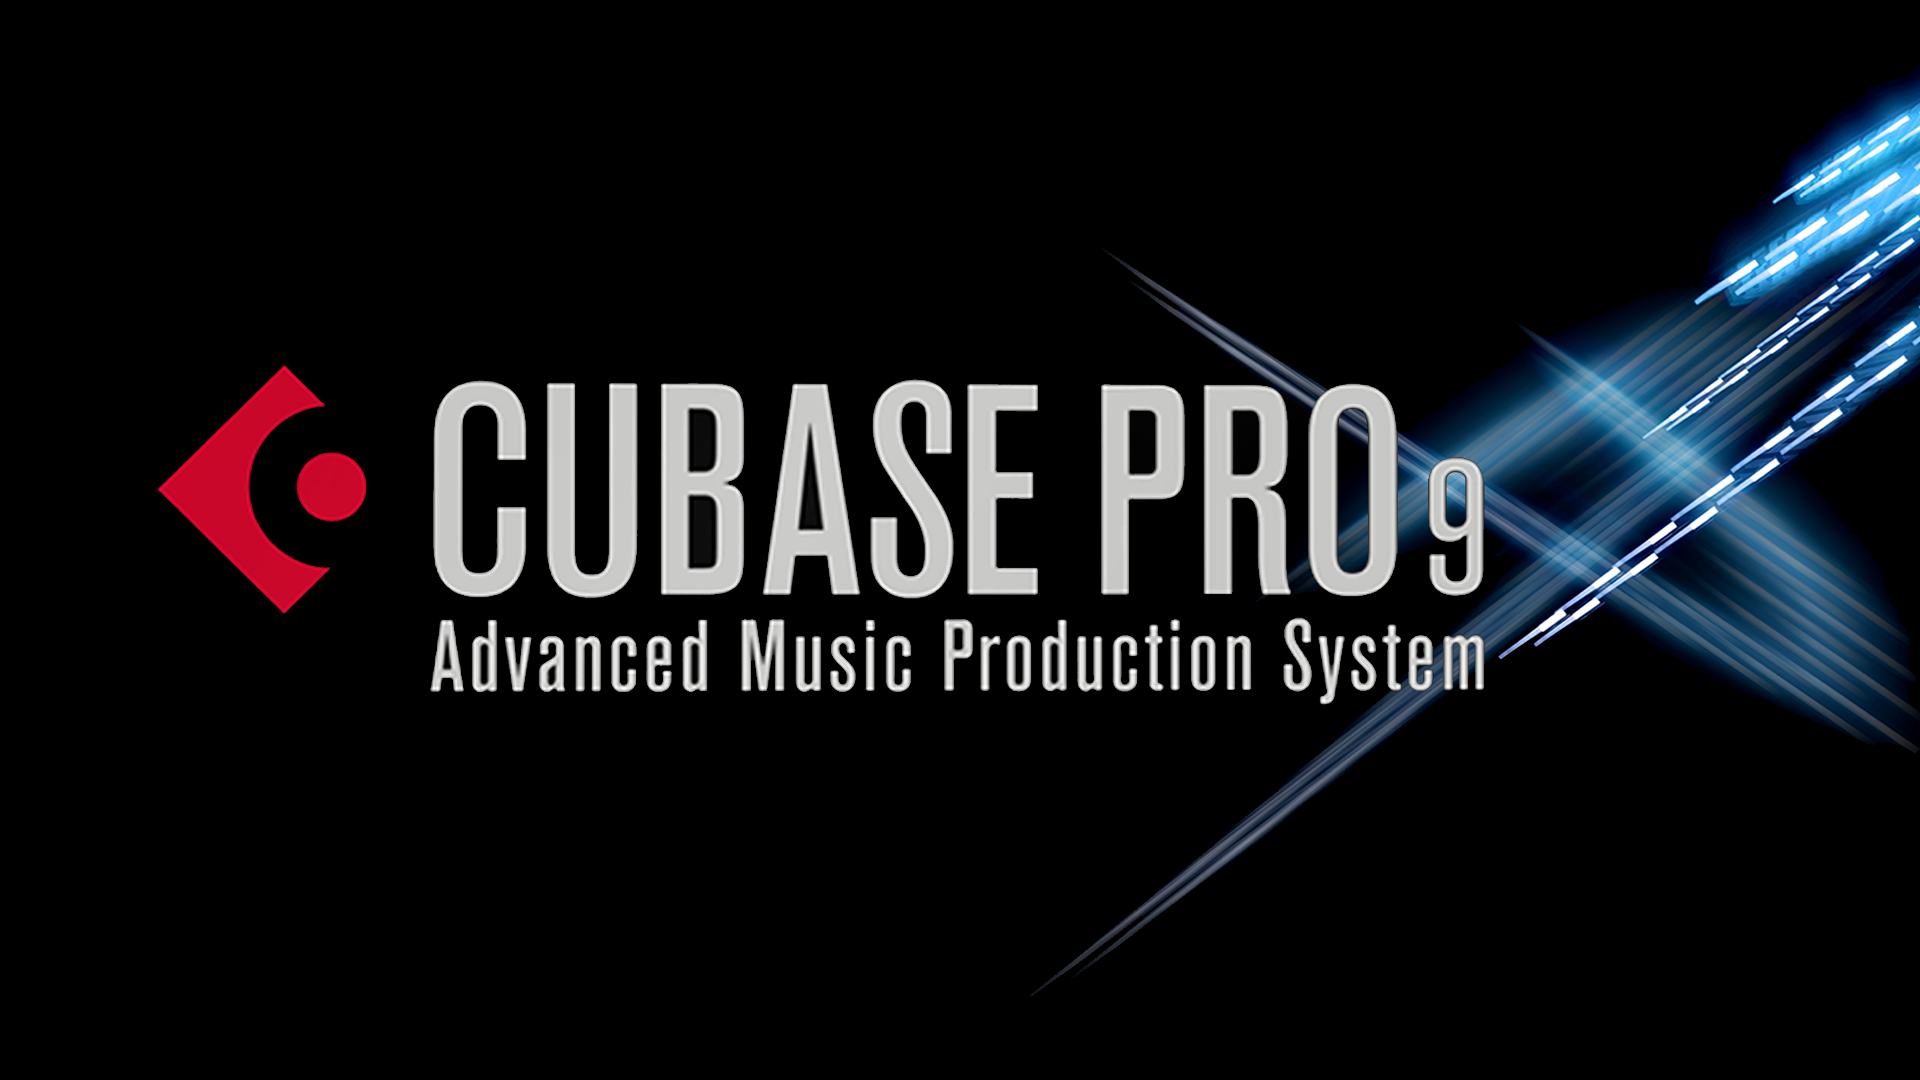 cubase pro 9 crack utorrent